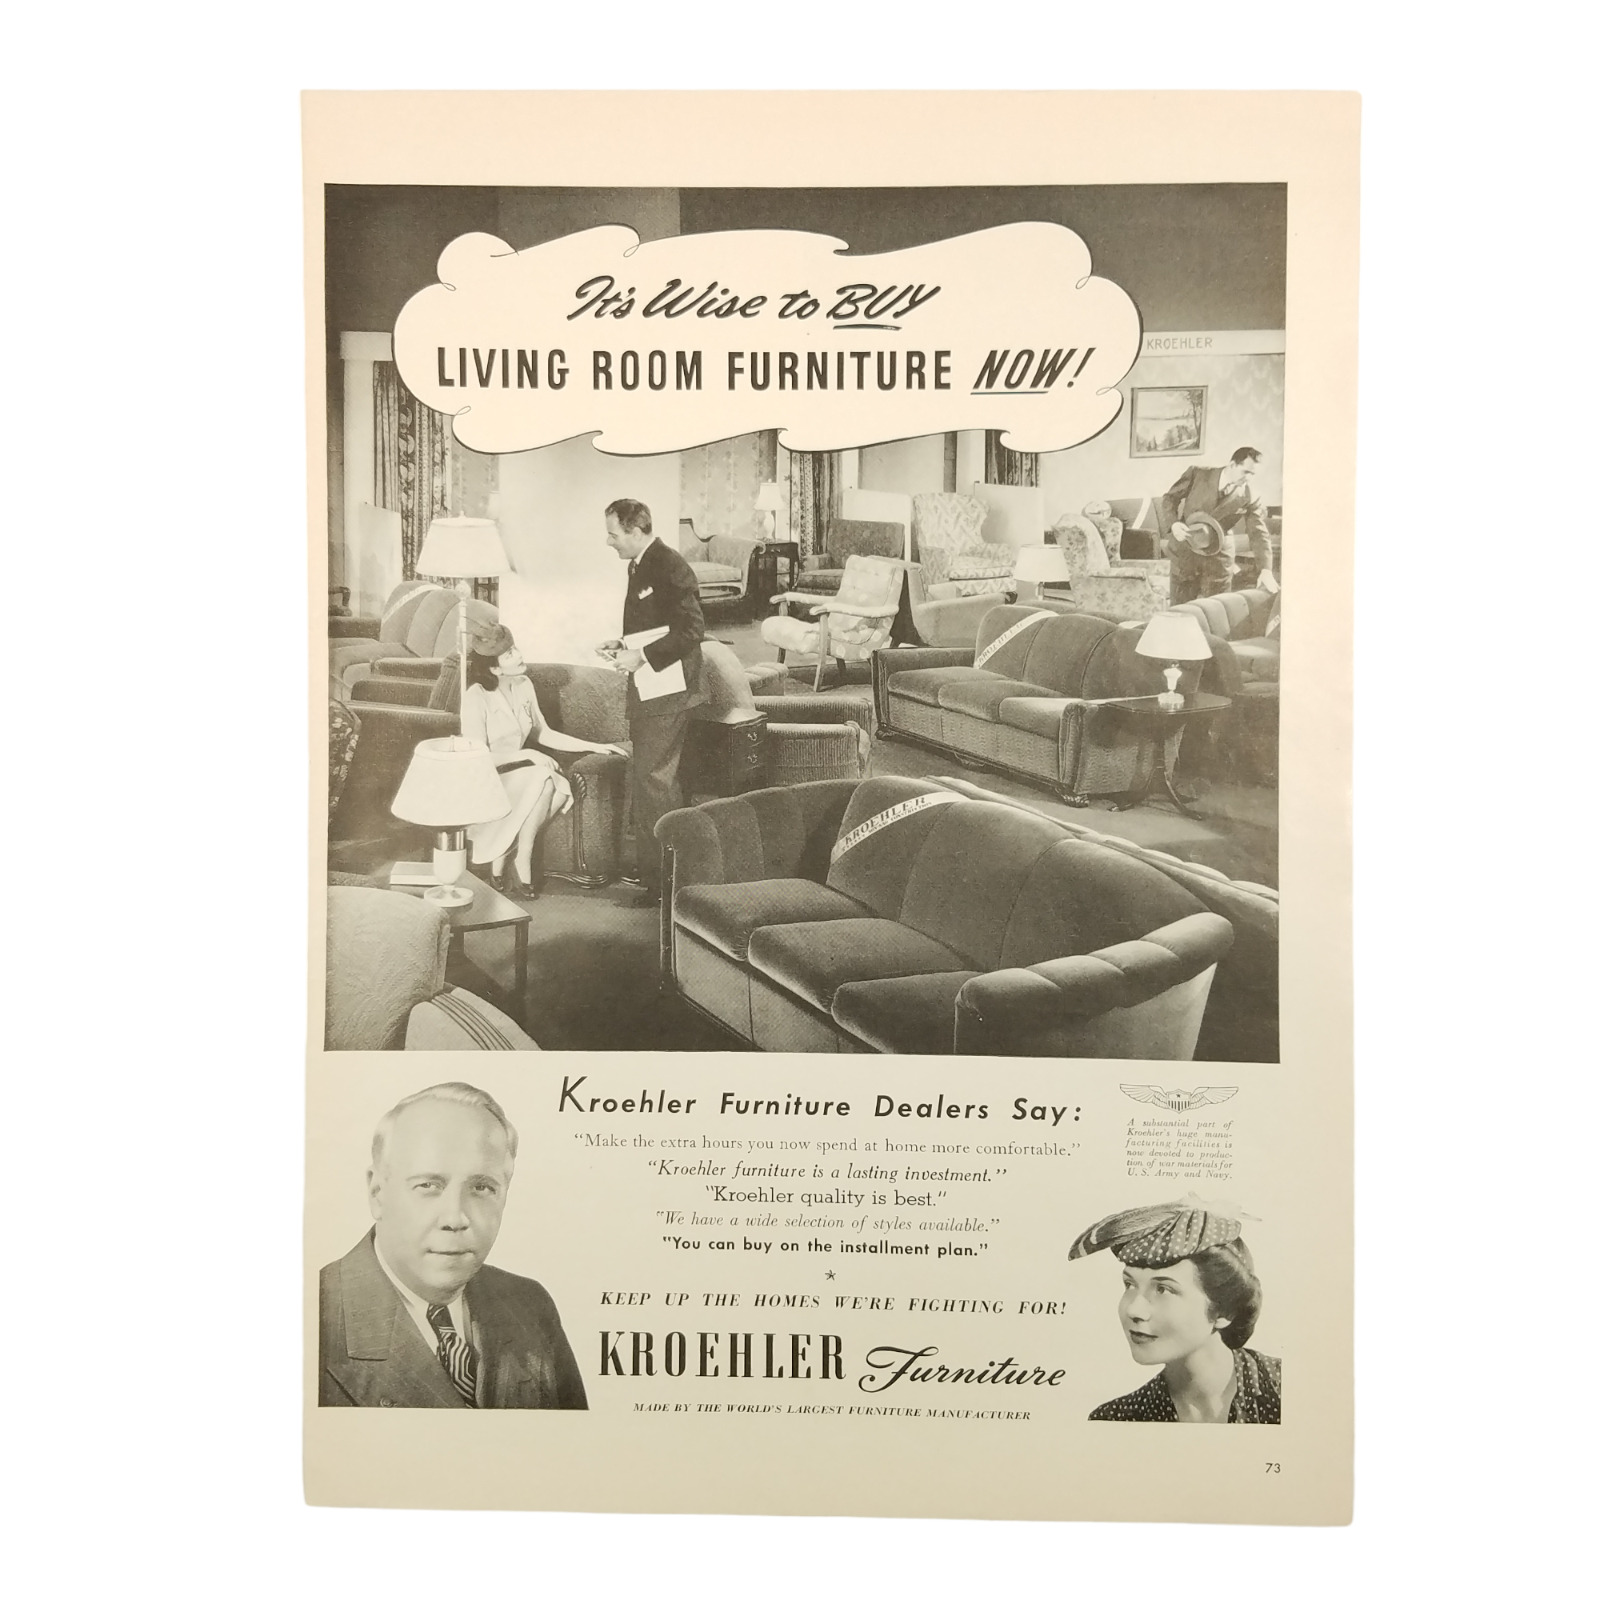 1942 Kroehler Furniture Vintage Print Ad Worlds Largest Furniture Manufacturer